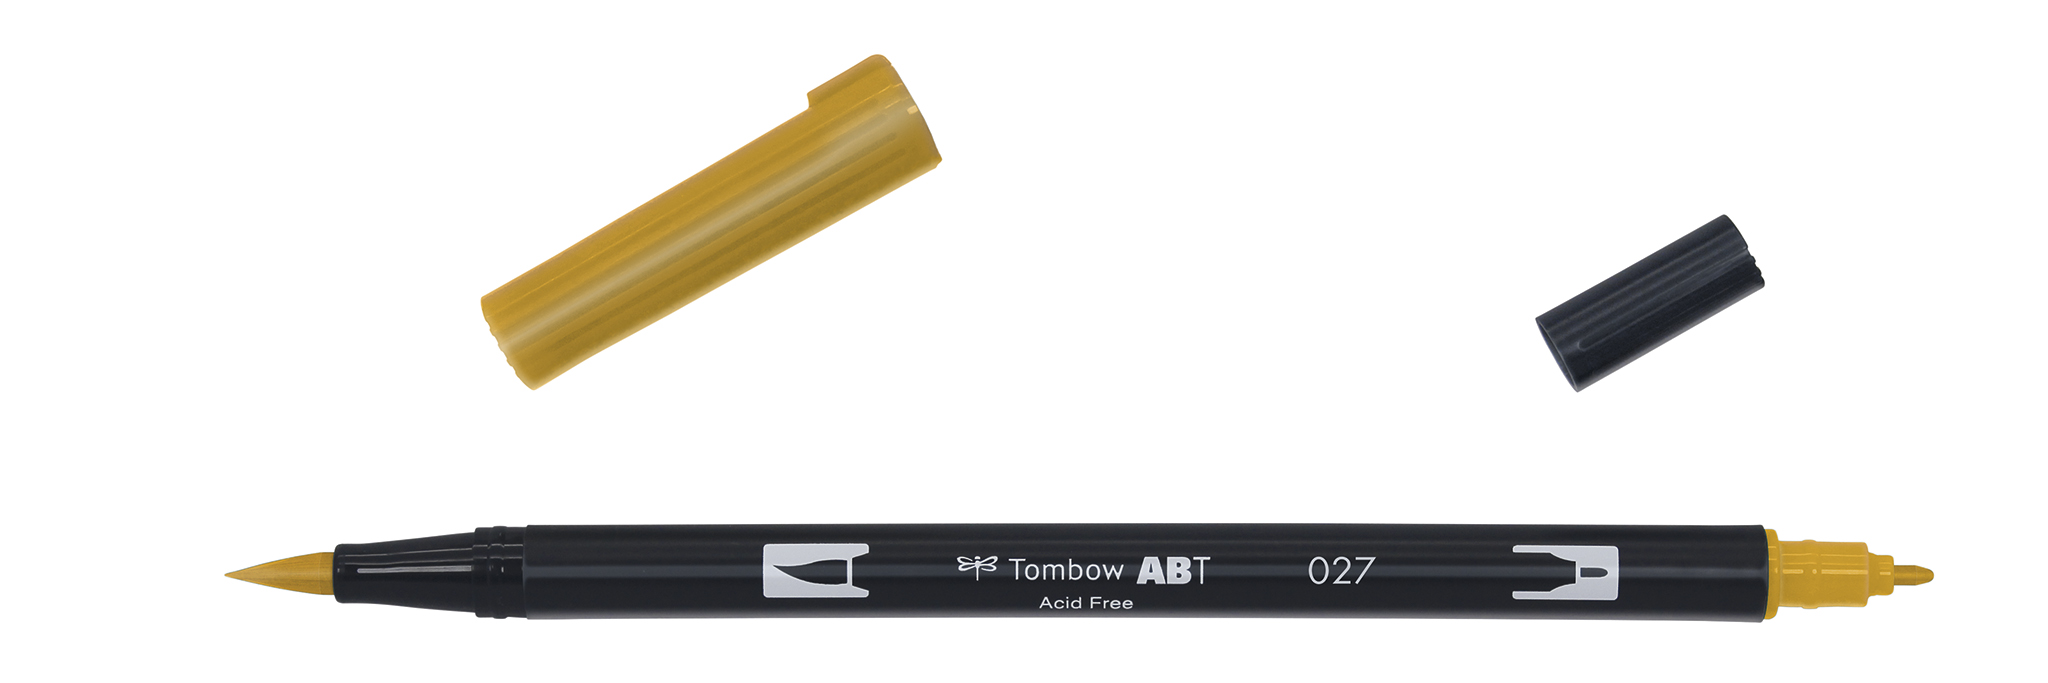 Tombow Art Brush Pen, dark ochre